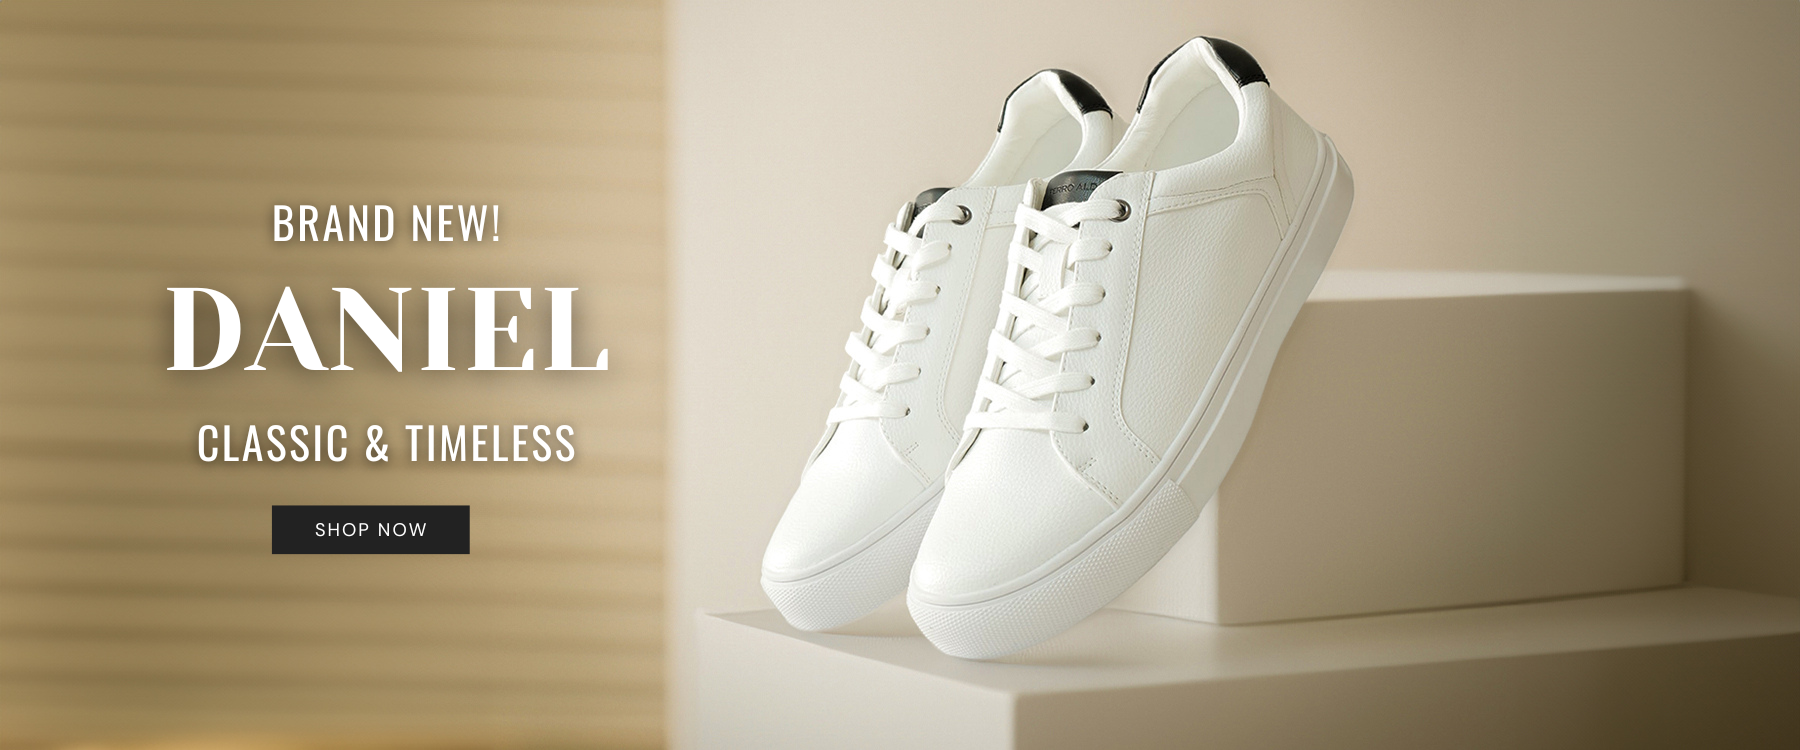 Brand New Release | Our Very Own Classic Sneaker Daniel | Ferro Aldo by Conal Footwear